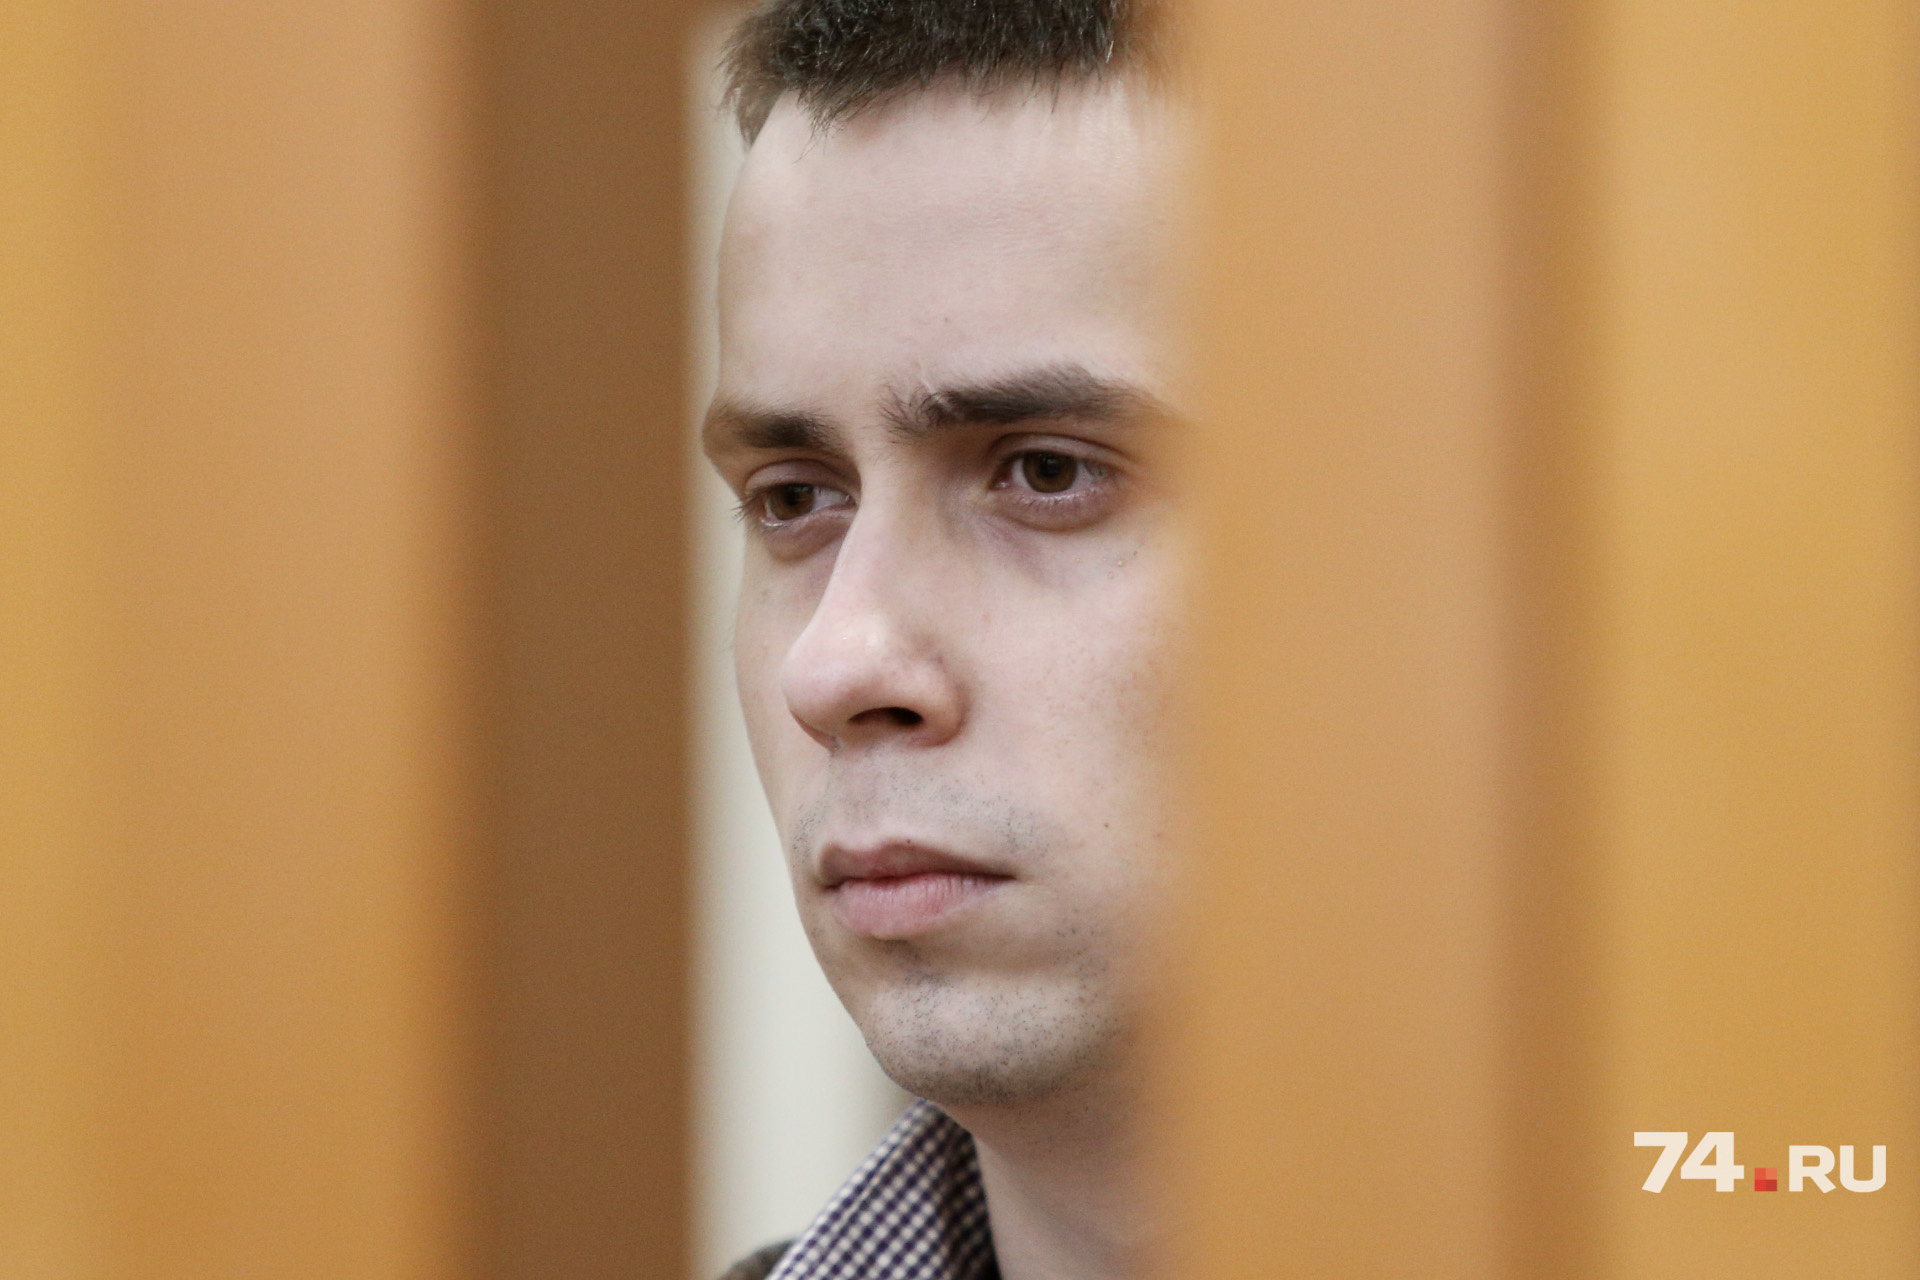 Николай Ефименко, услышав приговор суда, не проявил каких-либо эмоций